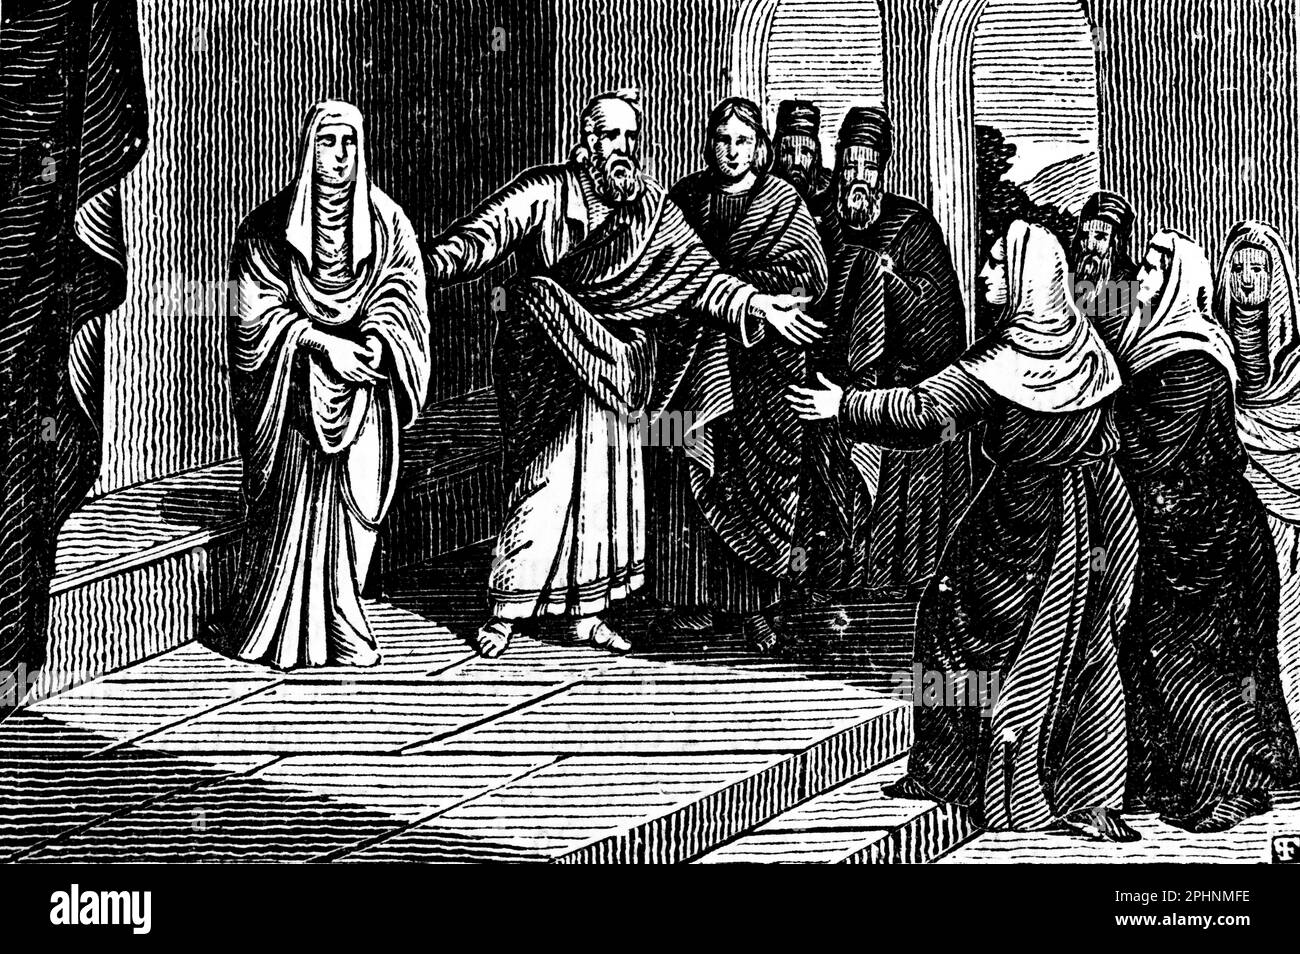 Aeneas wird von Petrus geheilt und Tabitha wird von den Toten auferstanden und zu den Jüngern geführt, Akt 9:36, Apostel, Neues Testament, bibel 1831, Illustration Stockfoto